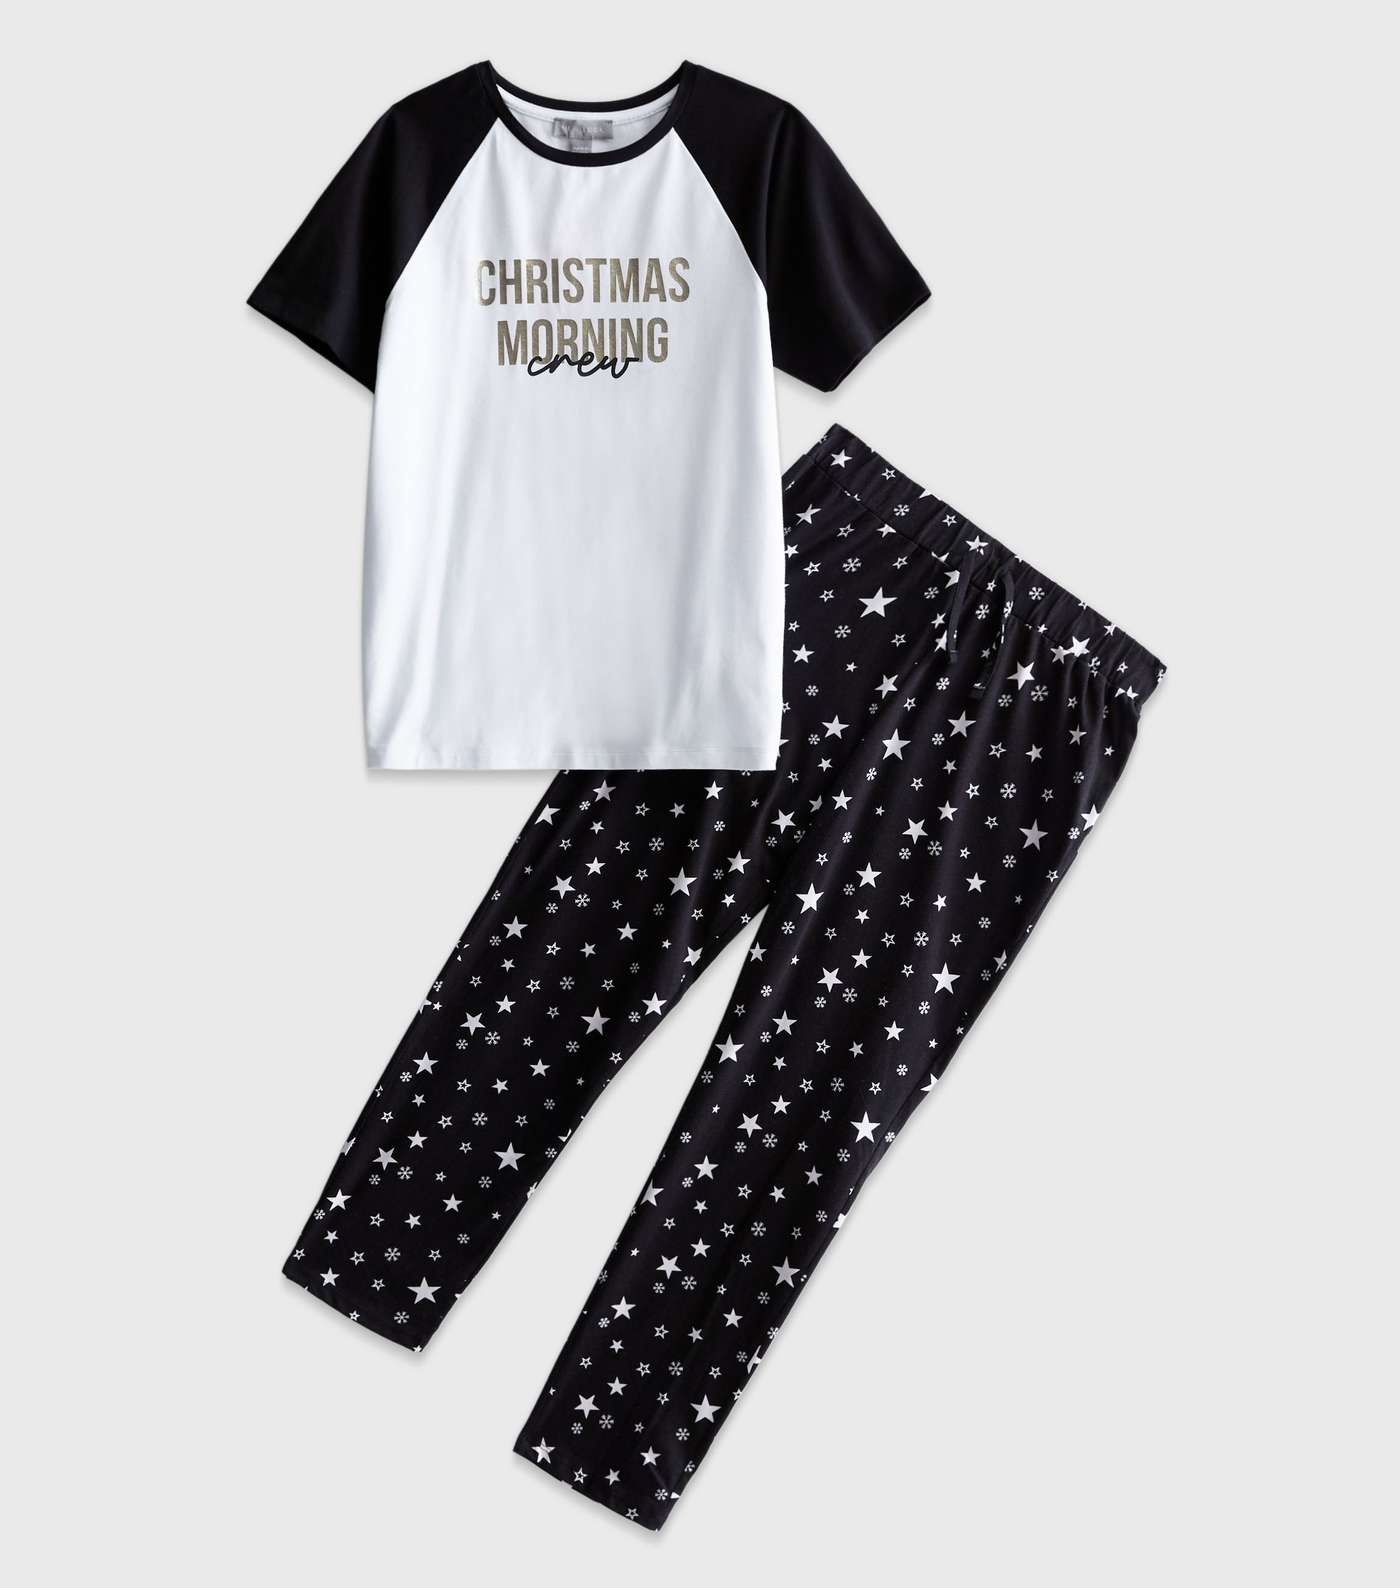 Boys Black Family Christmas Jogger Pyjama Set with Star Print Image 6